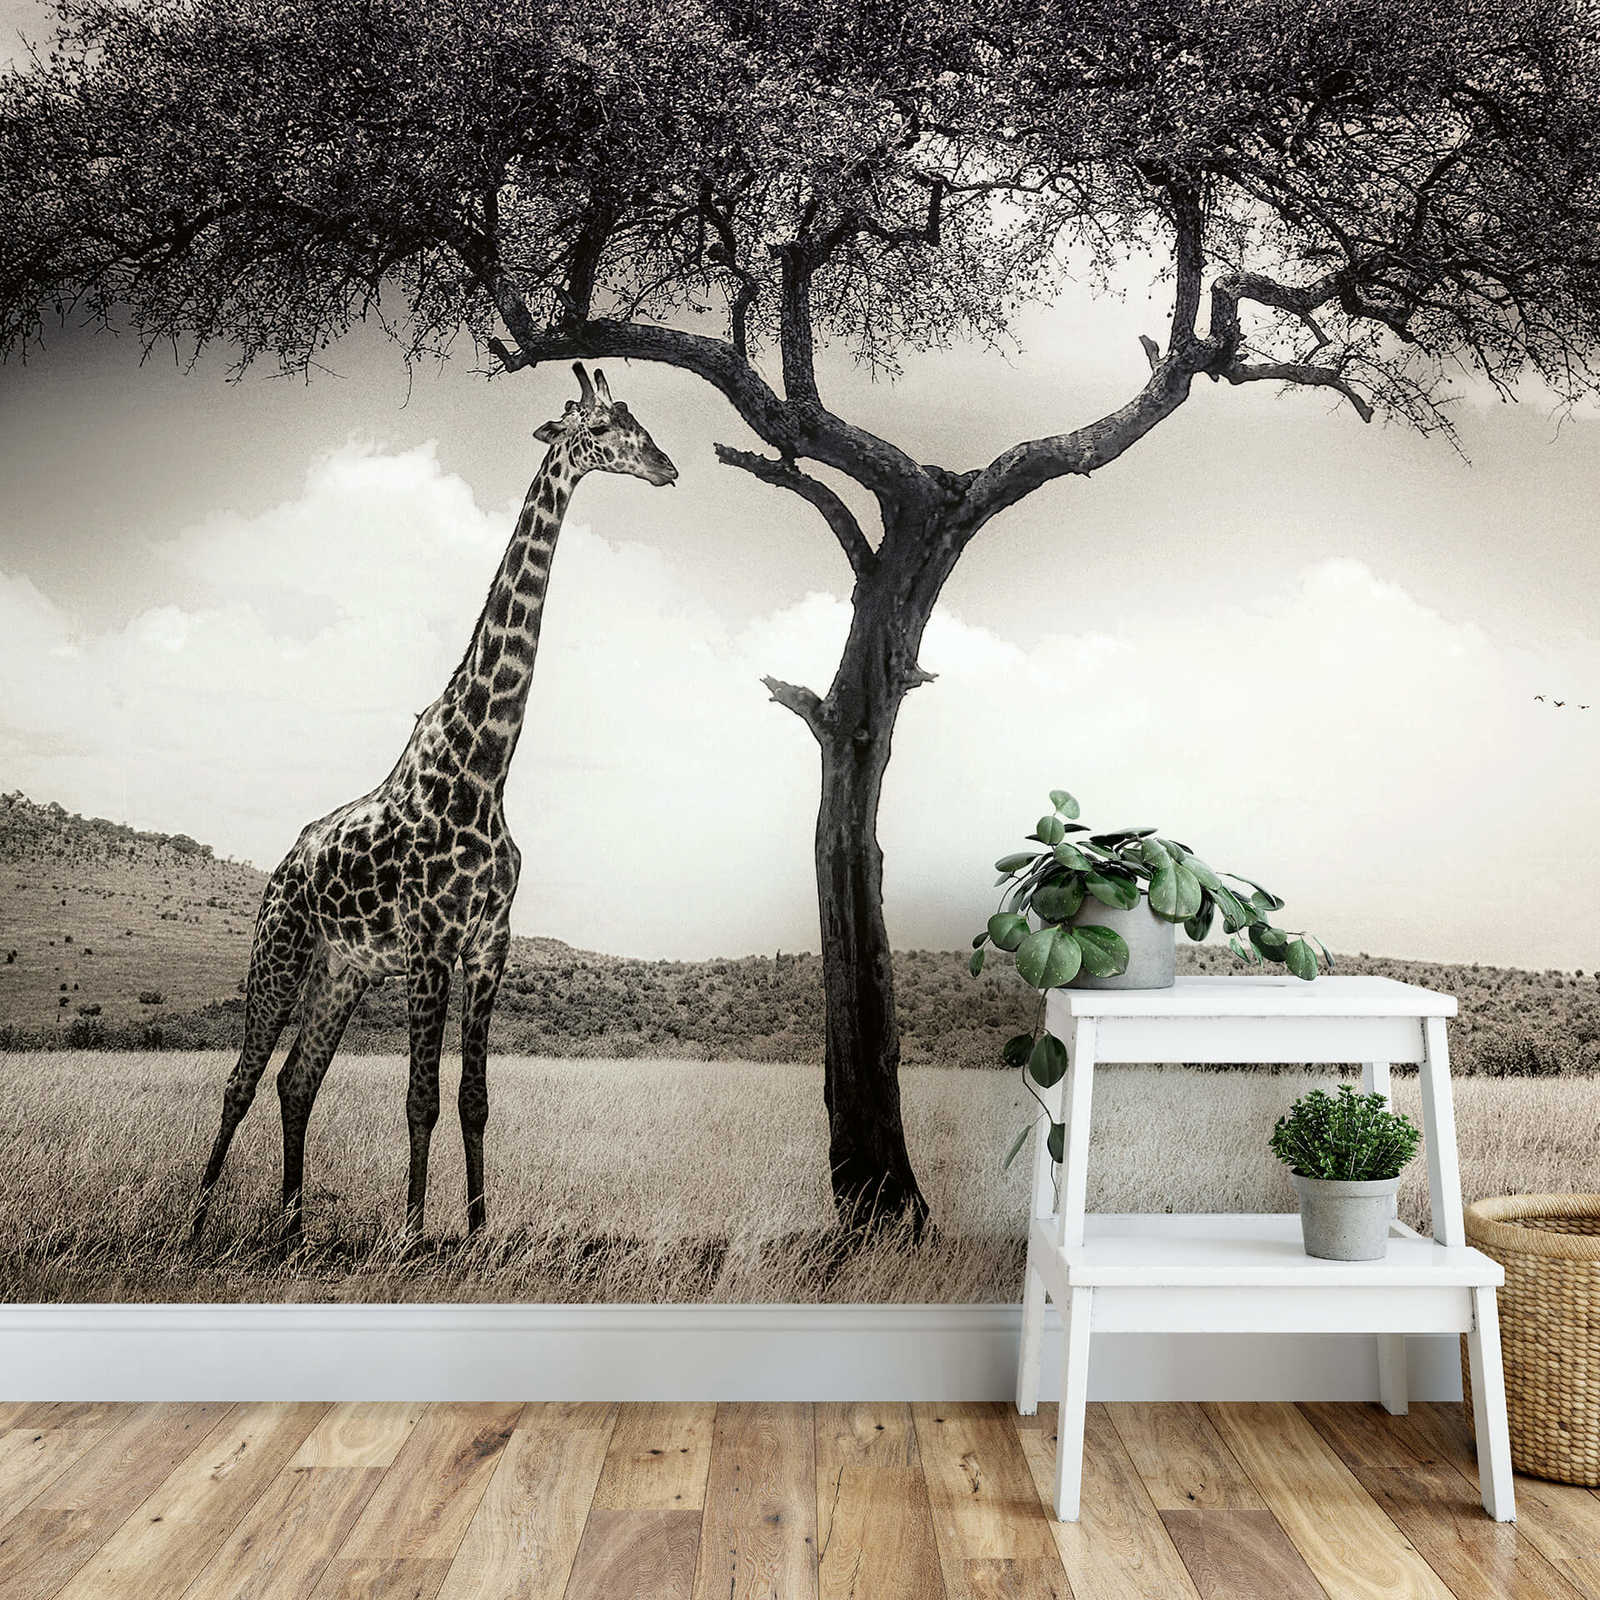             Papel pintado Jirafa de animales Safari - Gris, Blanco, Negro
        